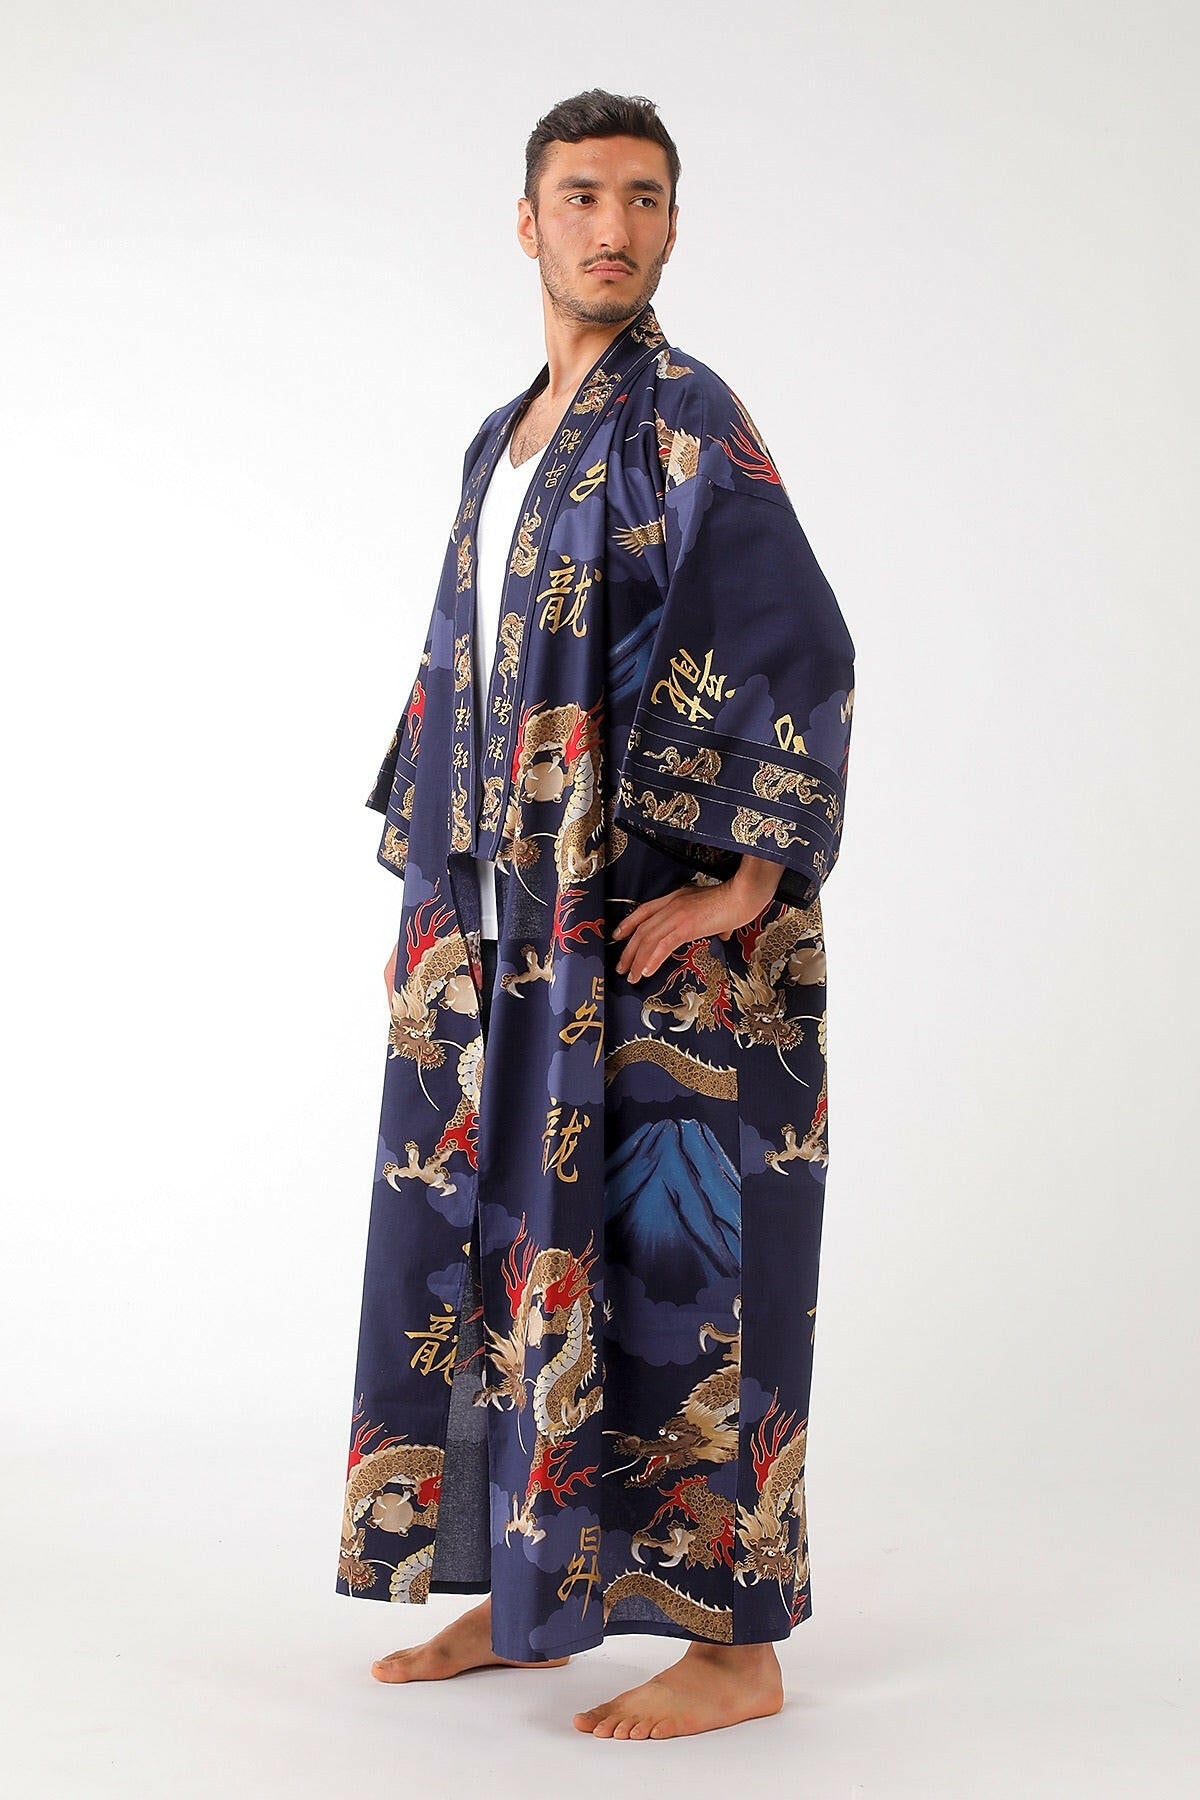 Men's Plus Size Yukata Kimono